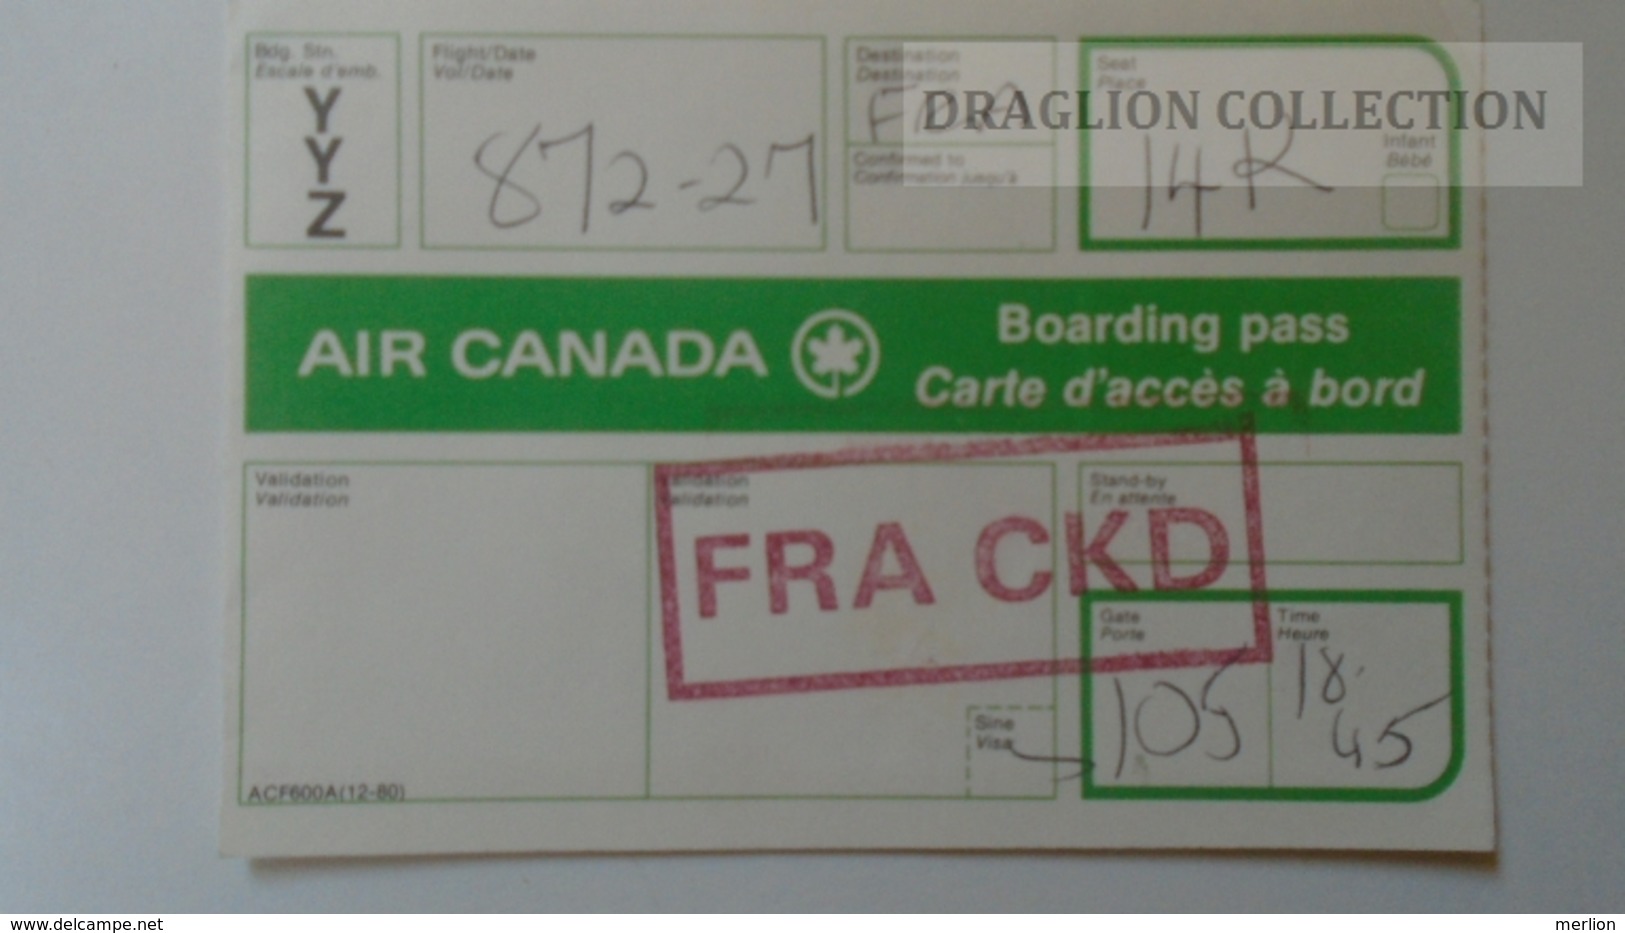 ZA212.27  AIR CANADA - CARTE D'EMBARQUEMENT BOARDING PASS  Ca 1960-70's - Cartes D'embarquement